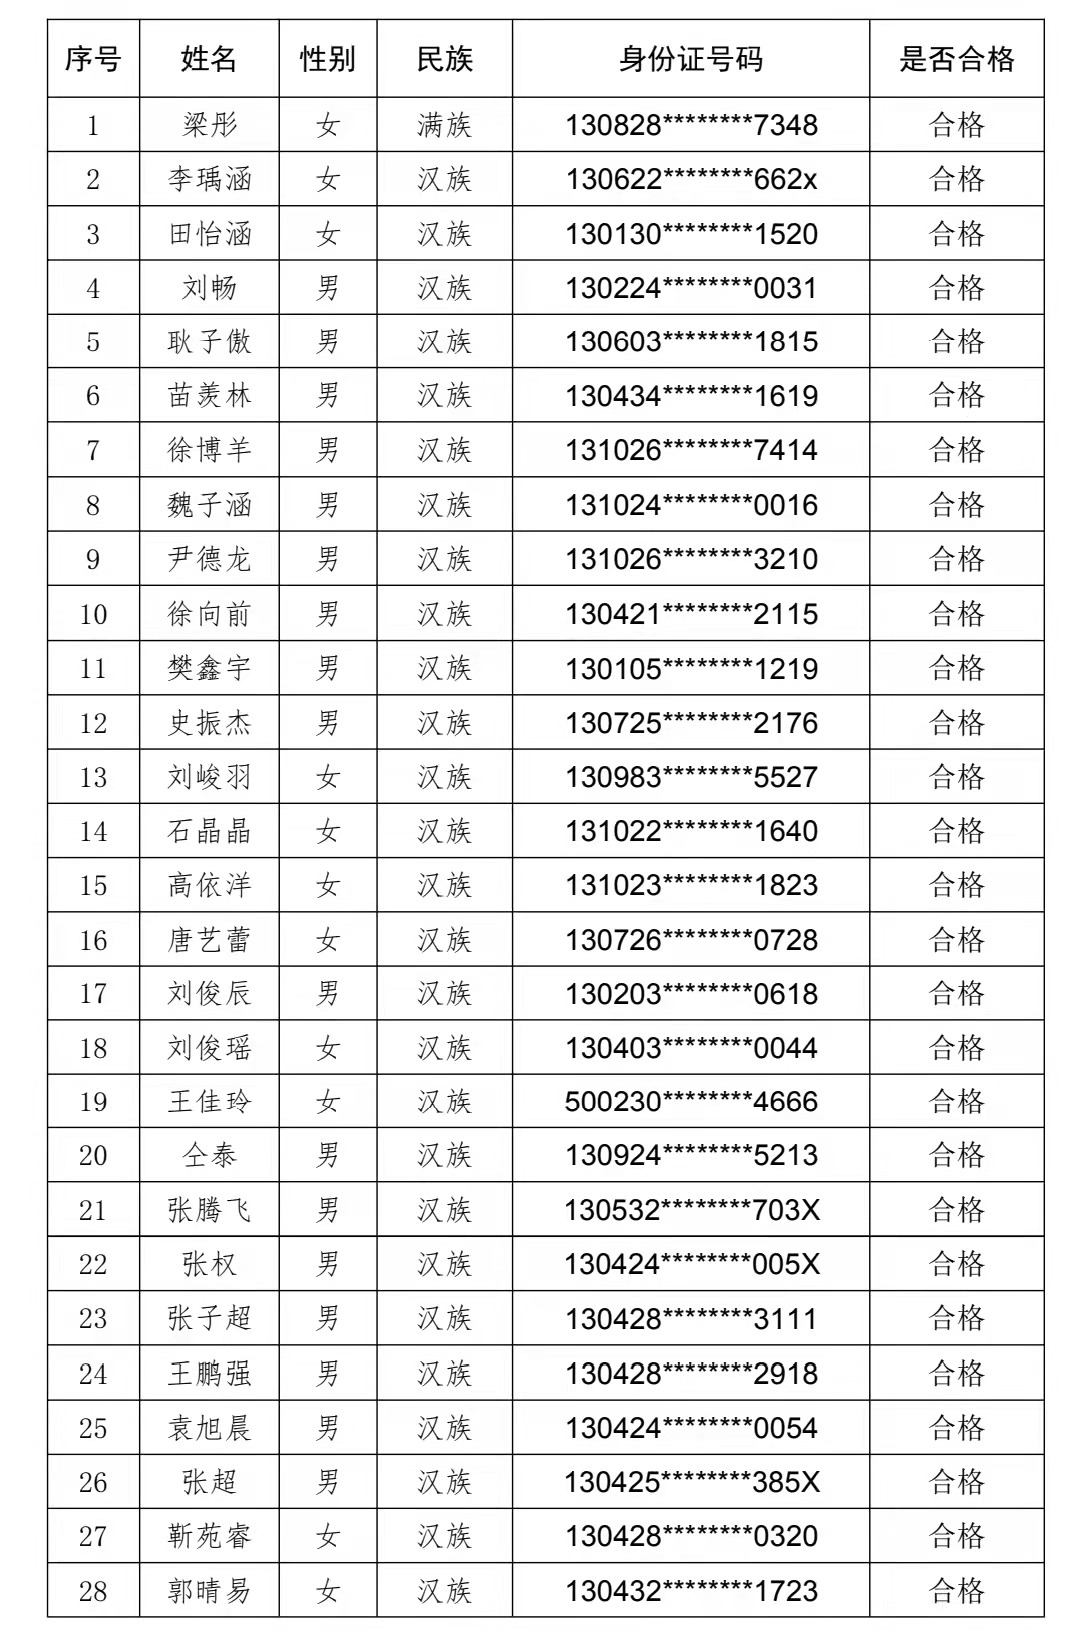 天津体育职业学院2022年河北省高职单招免试合格名单公示